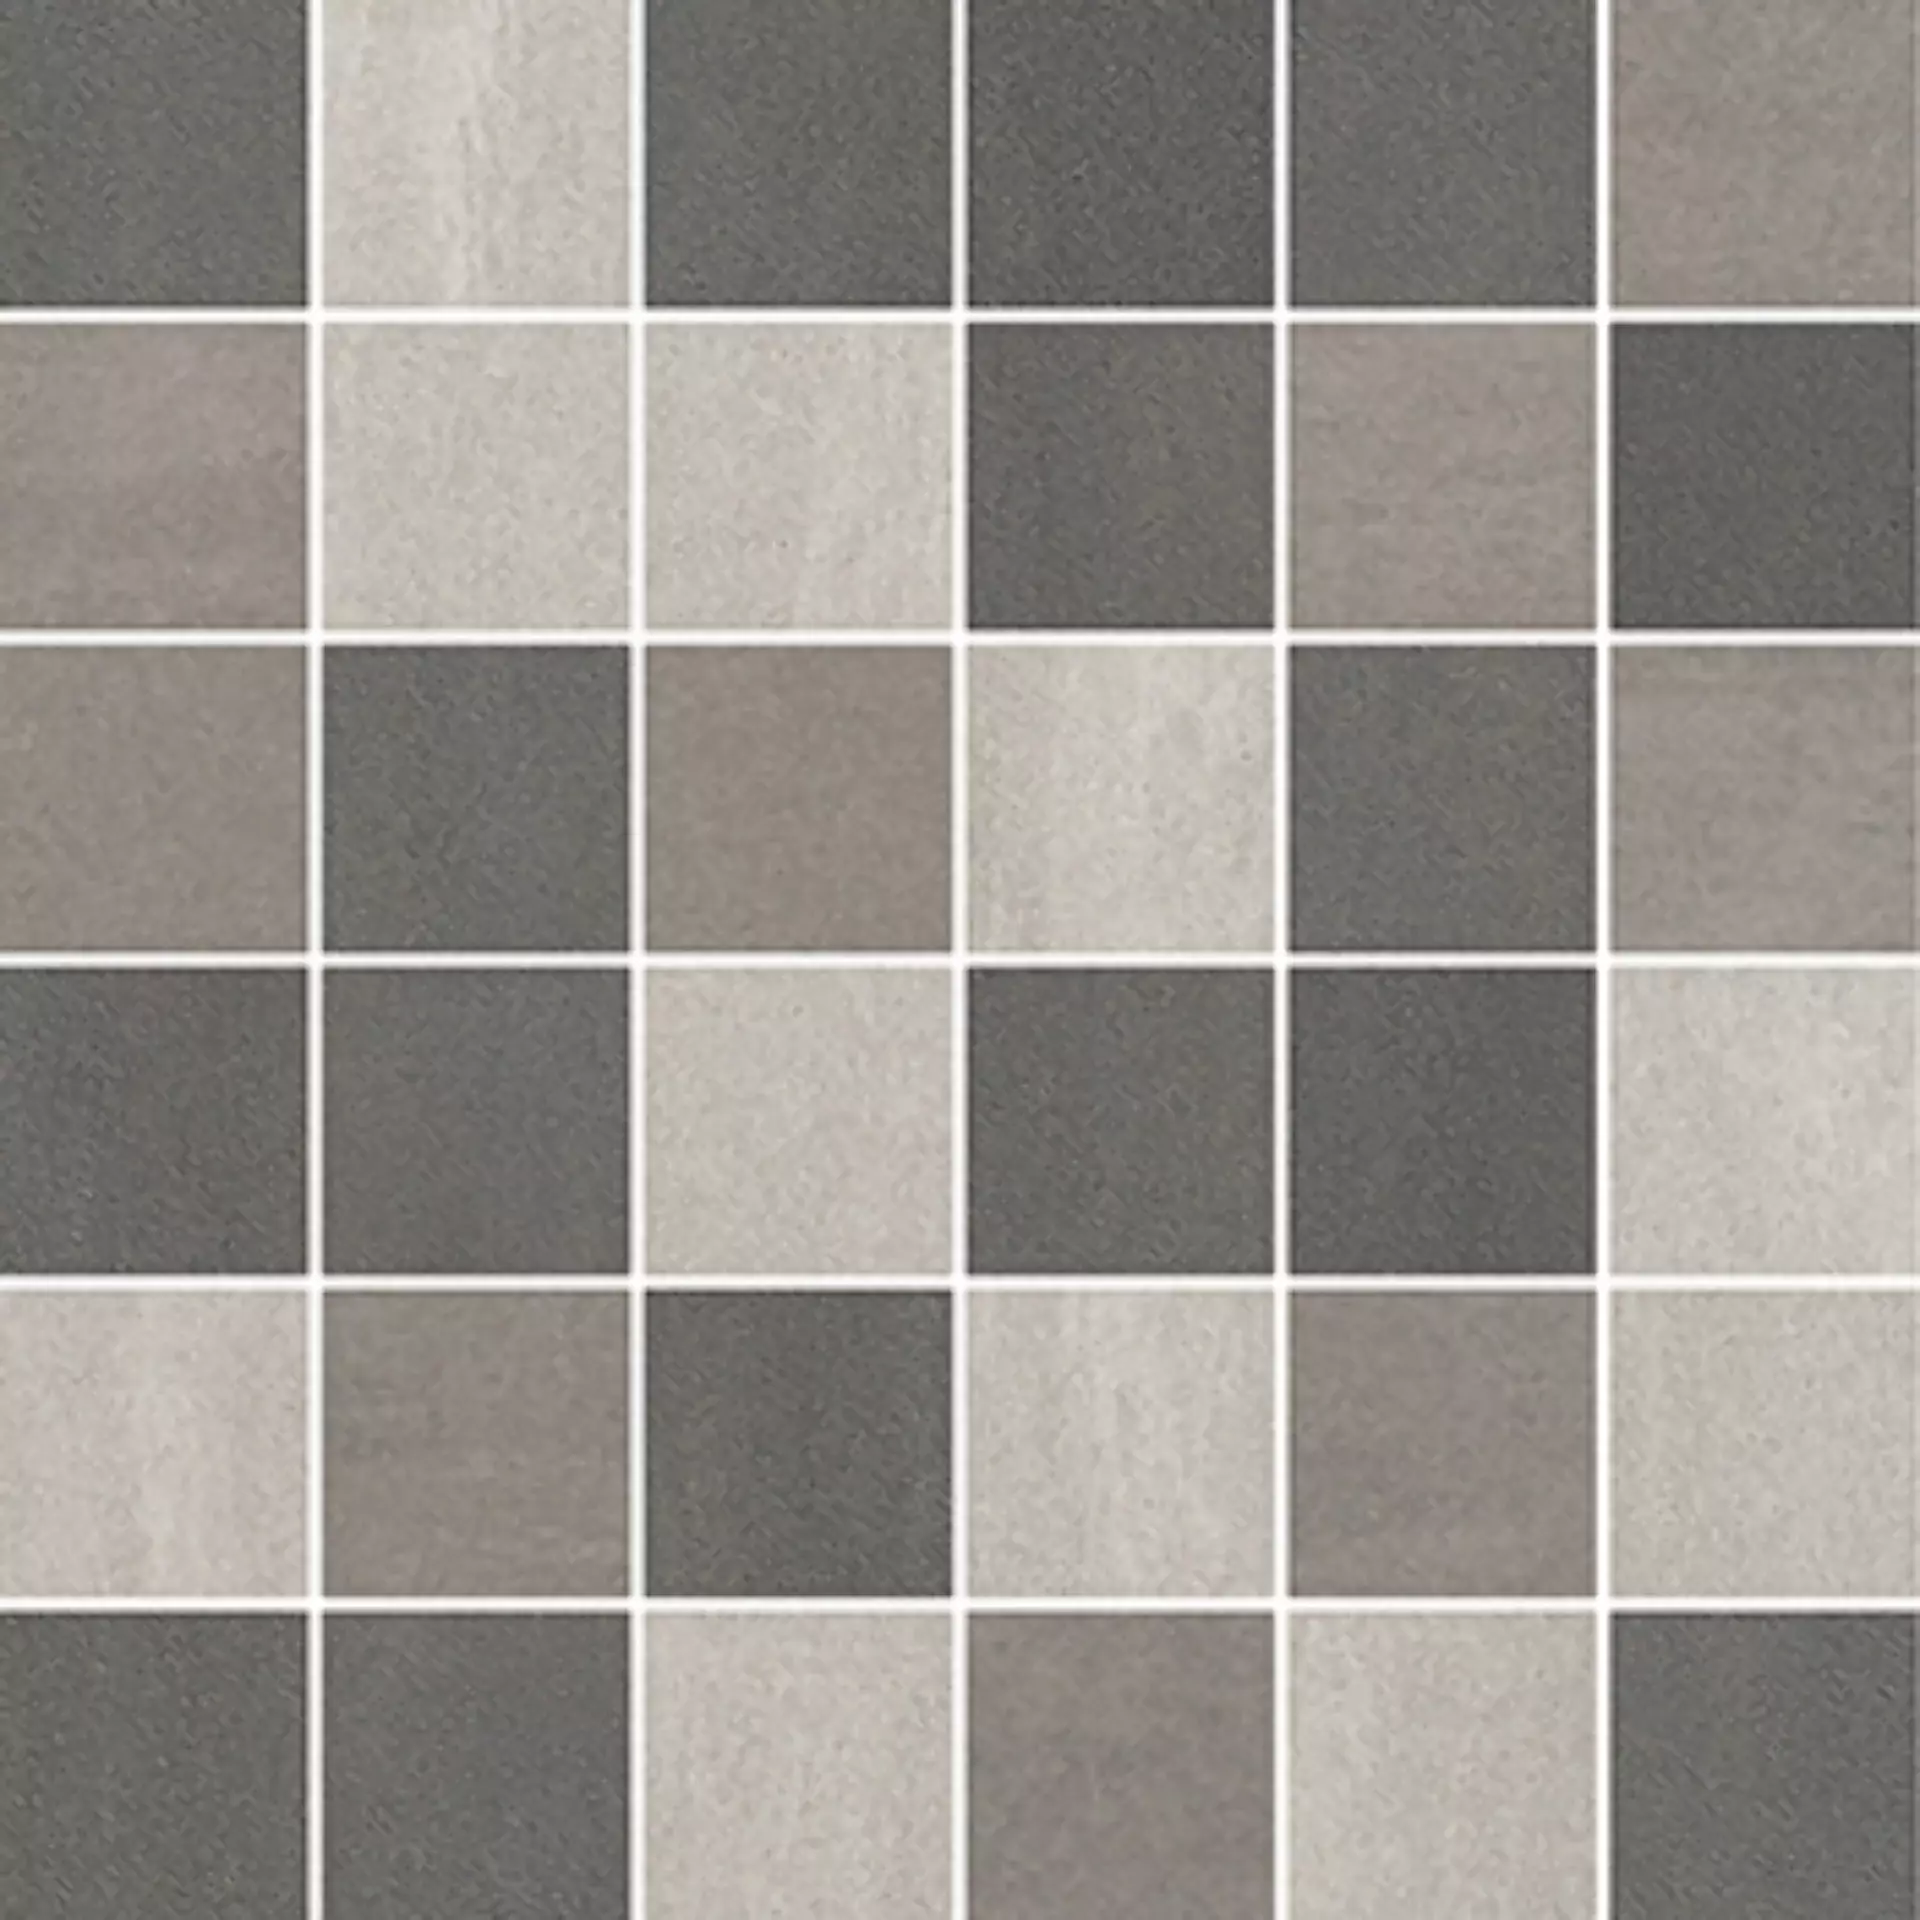 Wandfliese,Bodenfliese Villeroy & Boch Unit Four Wall Grey Multicolour Matt Grey Multicolour 2706-CT66 matt 5x5cm Mosaik (5x5) 6mm